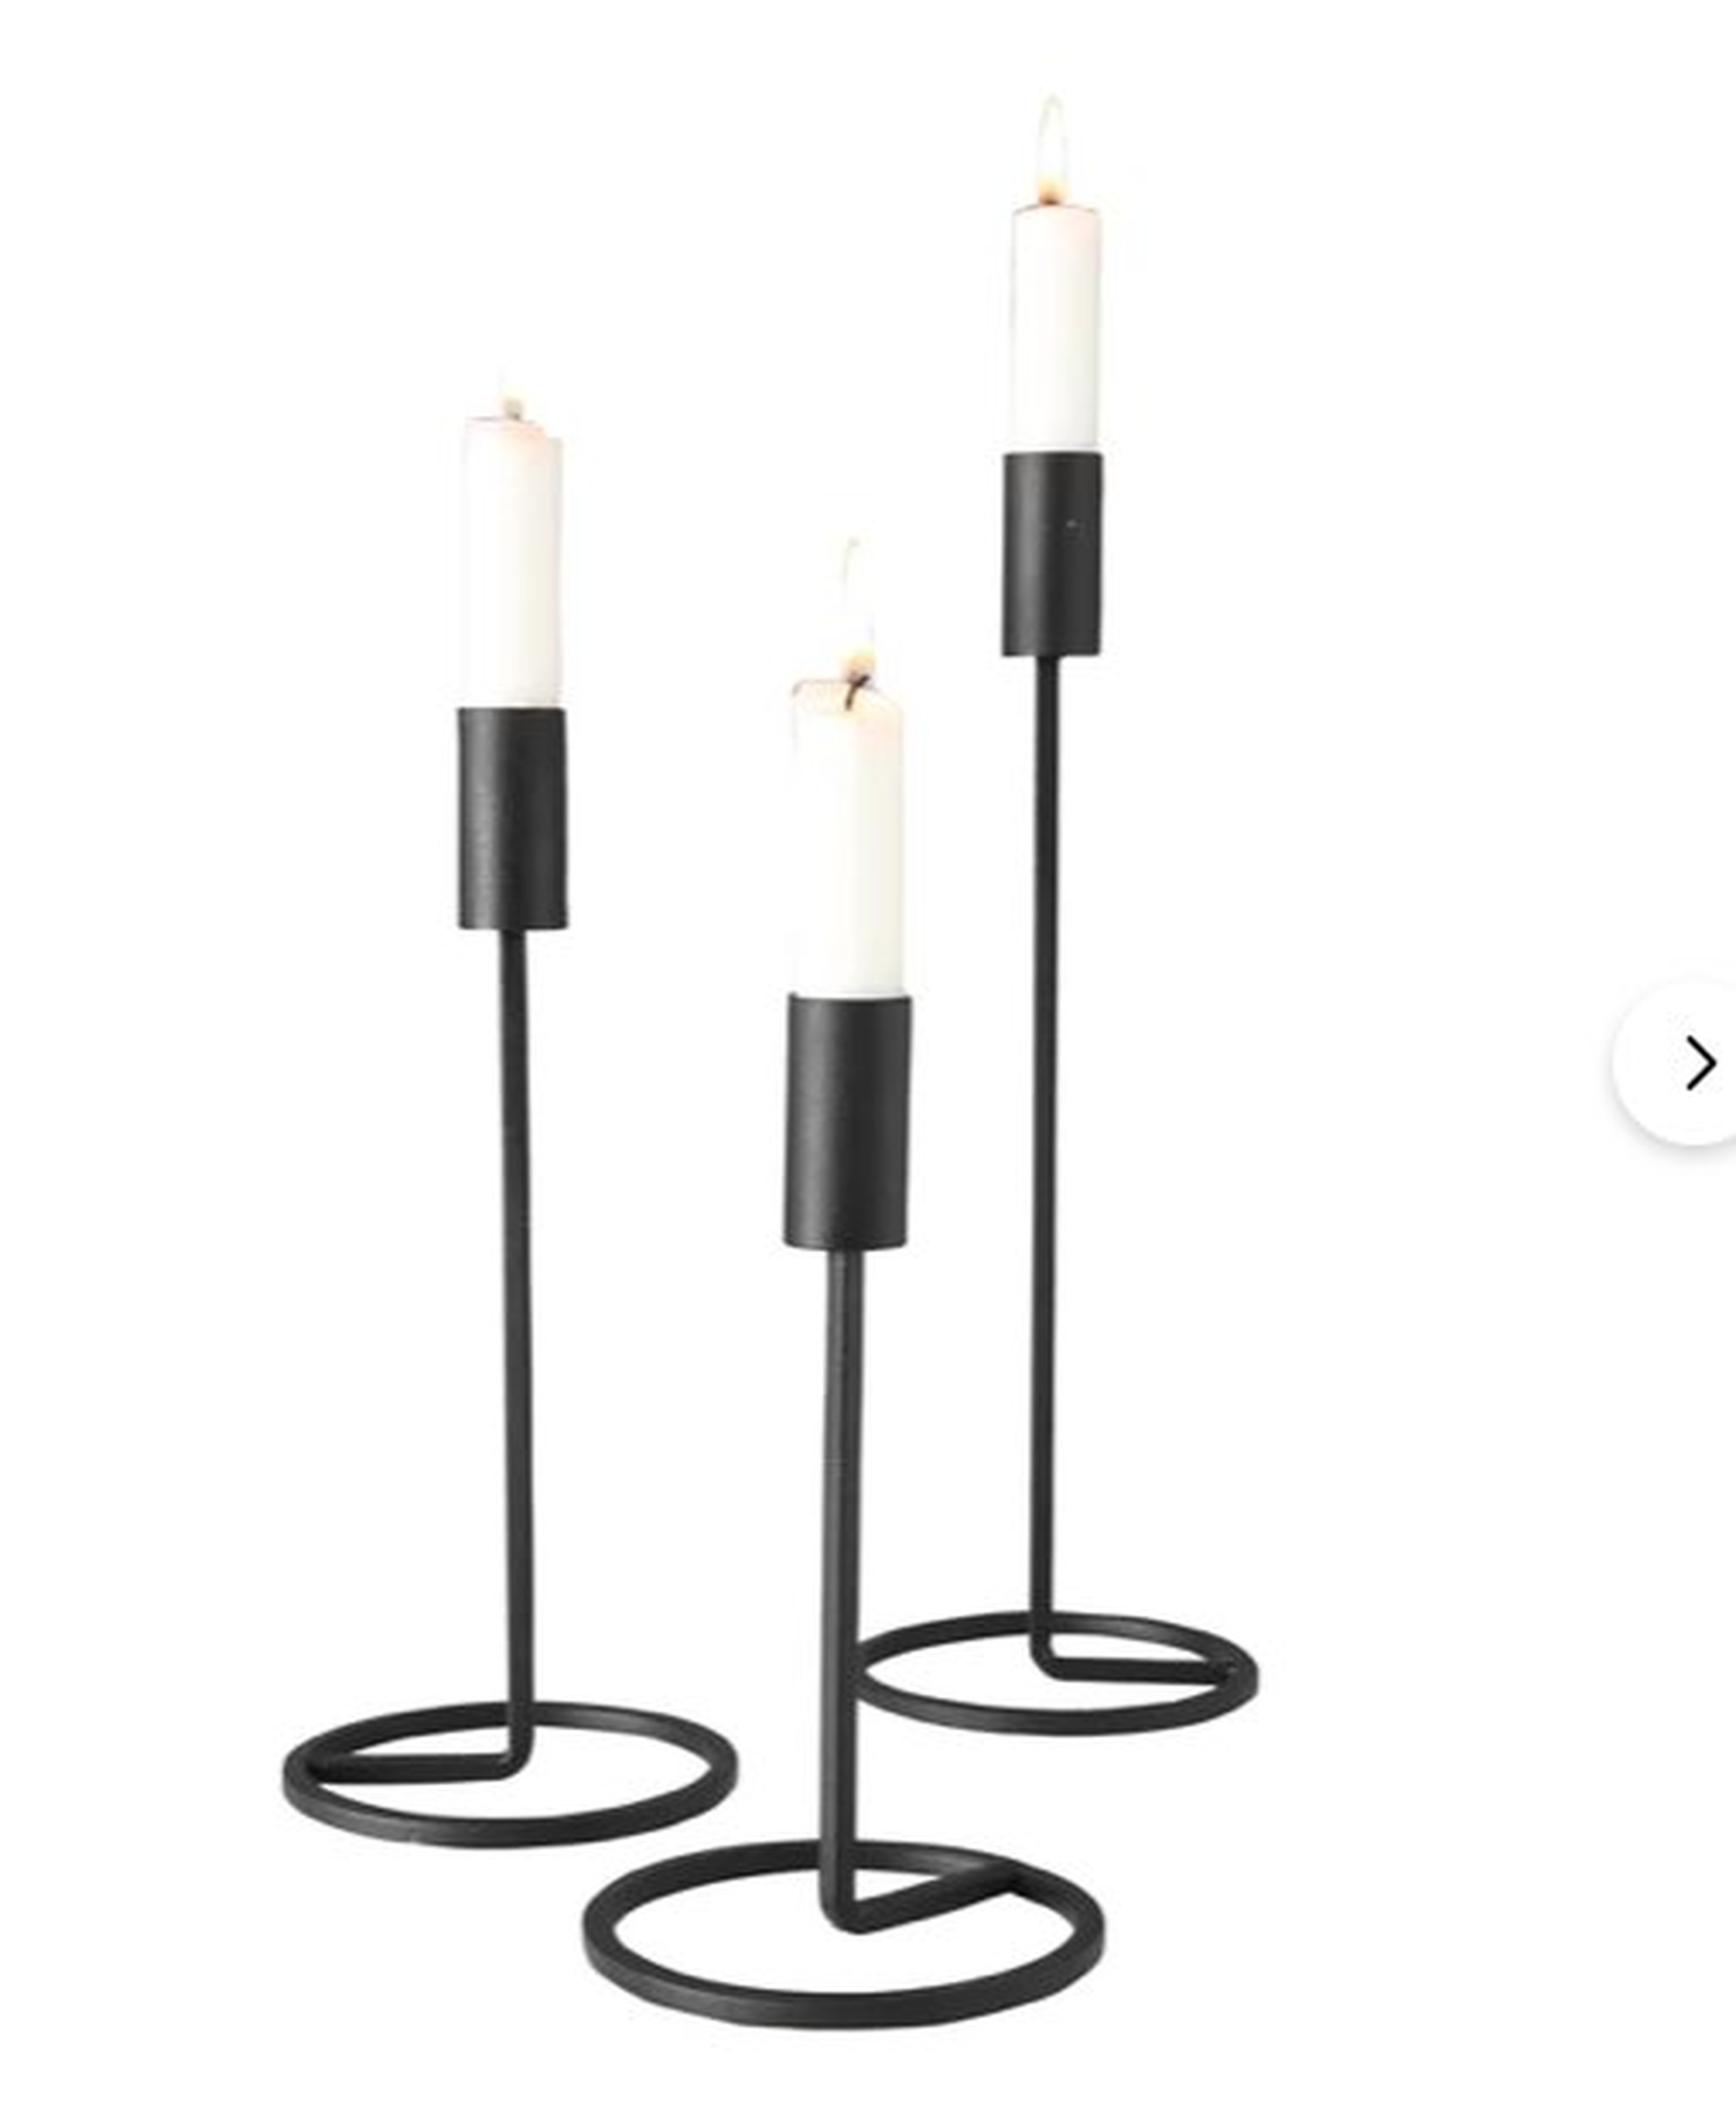 3 Piece Cylinder Top Metal Candlestick Set - Wayfair